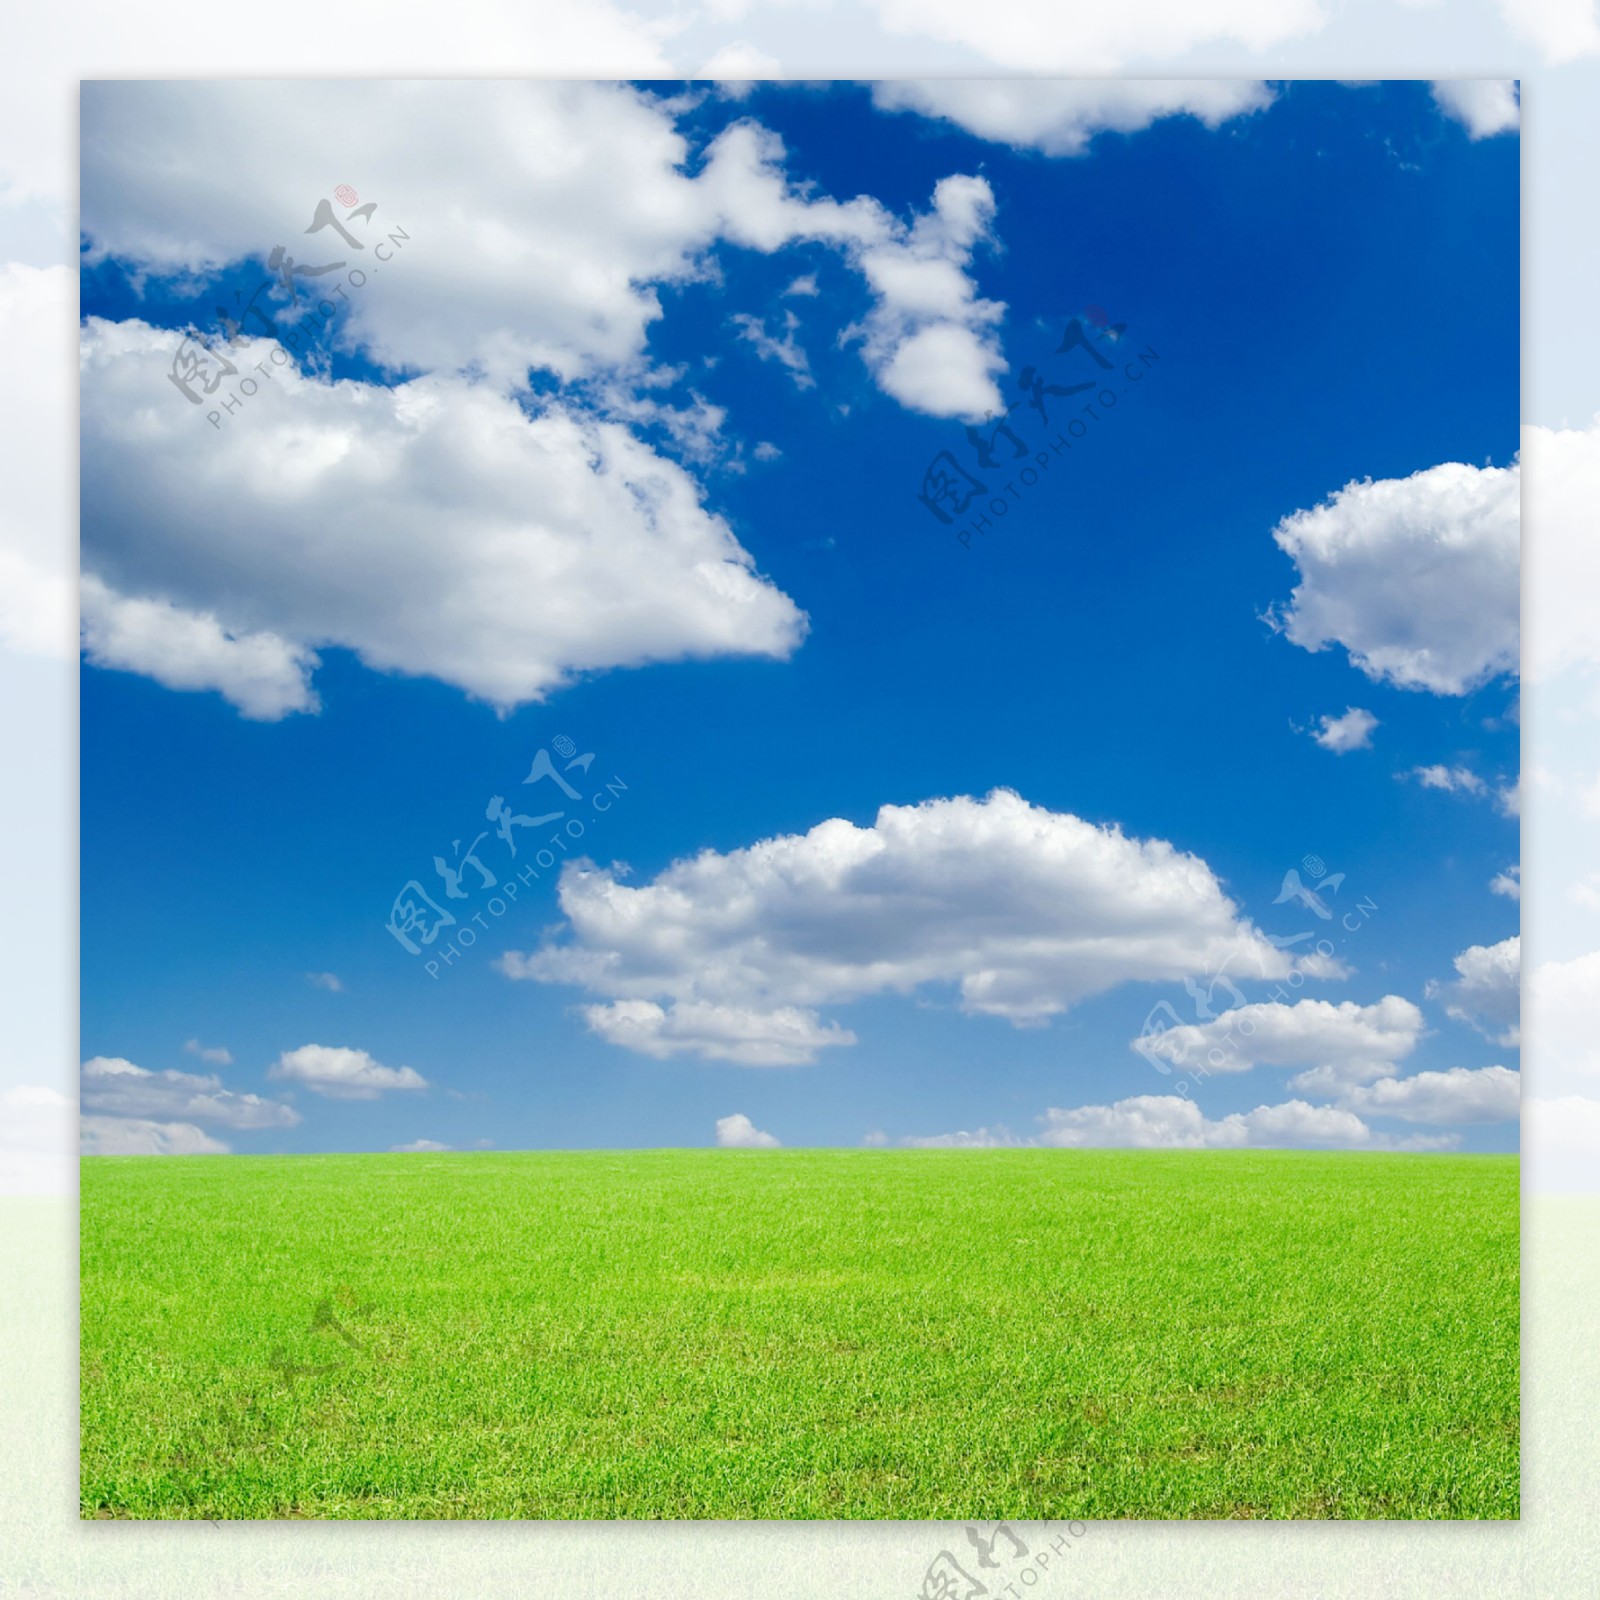 蓝天白云下的草地